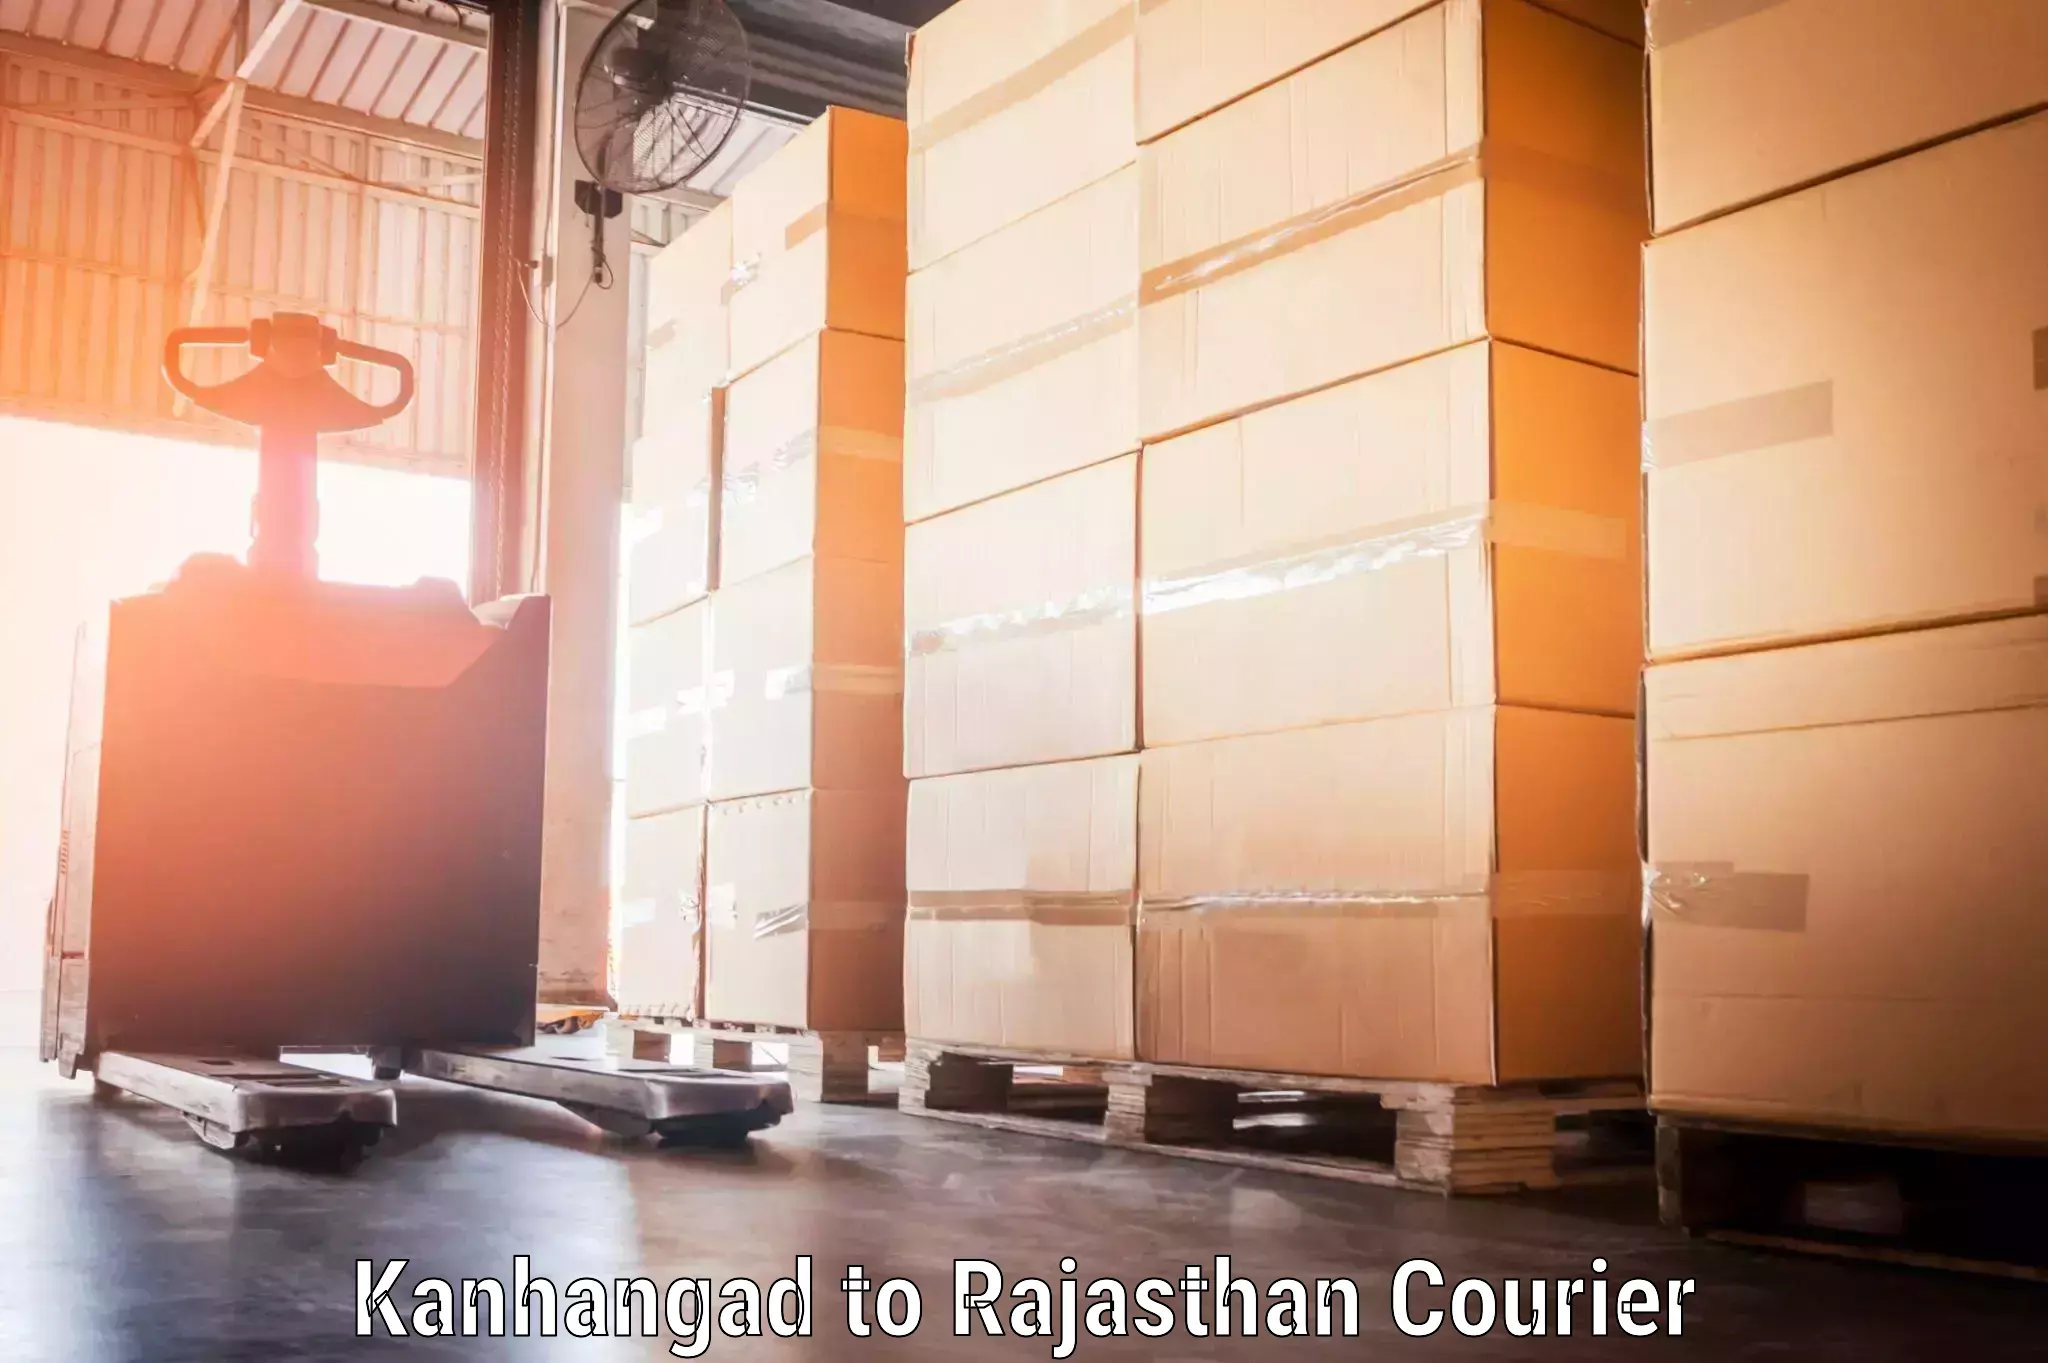 Baggage transport coordination Kanhangad to Rajasthan